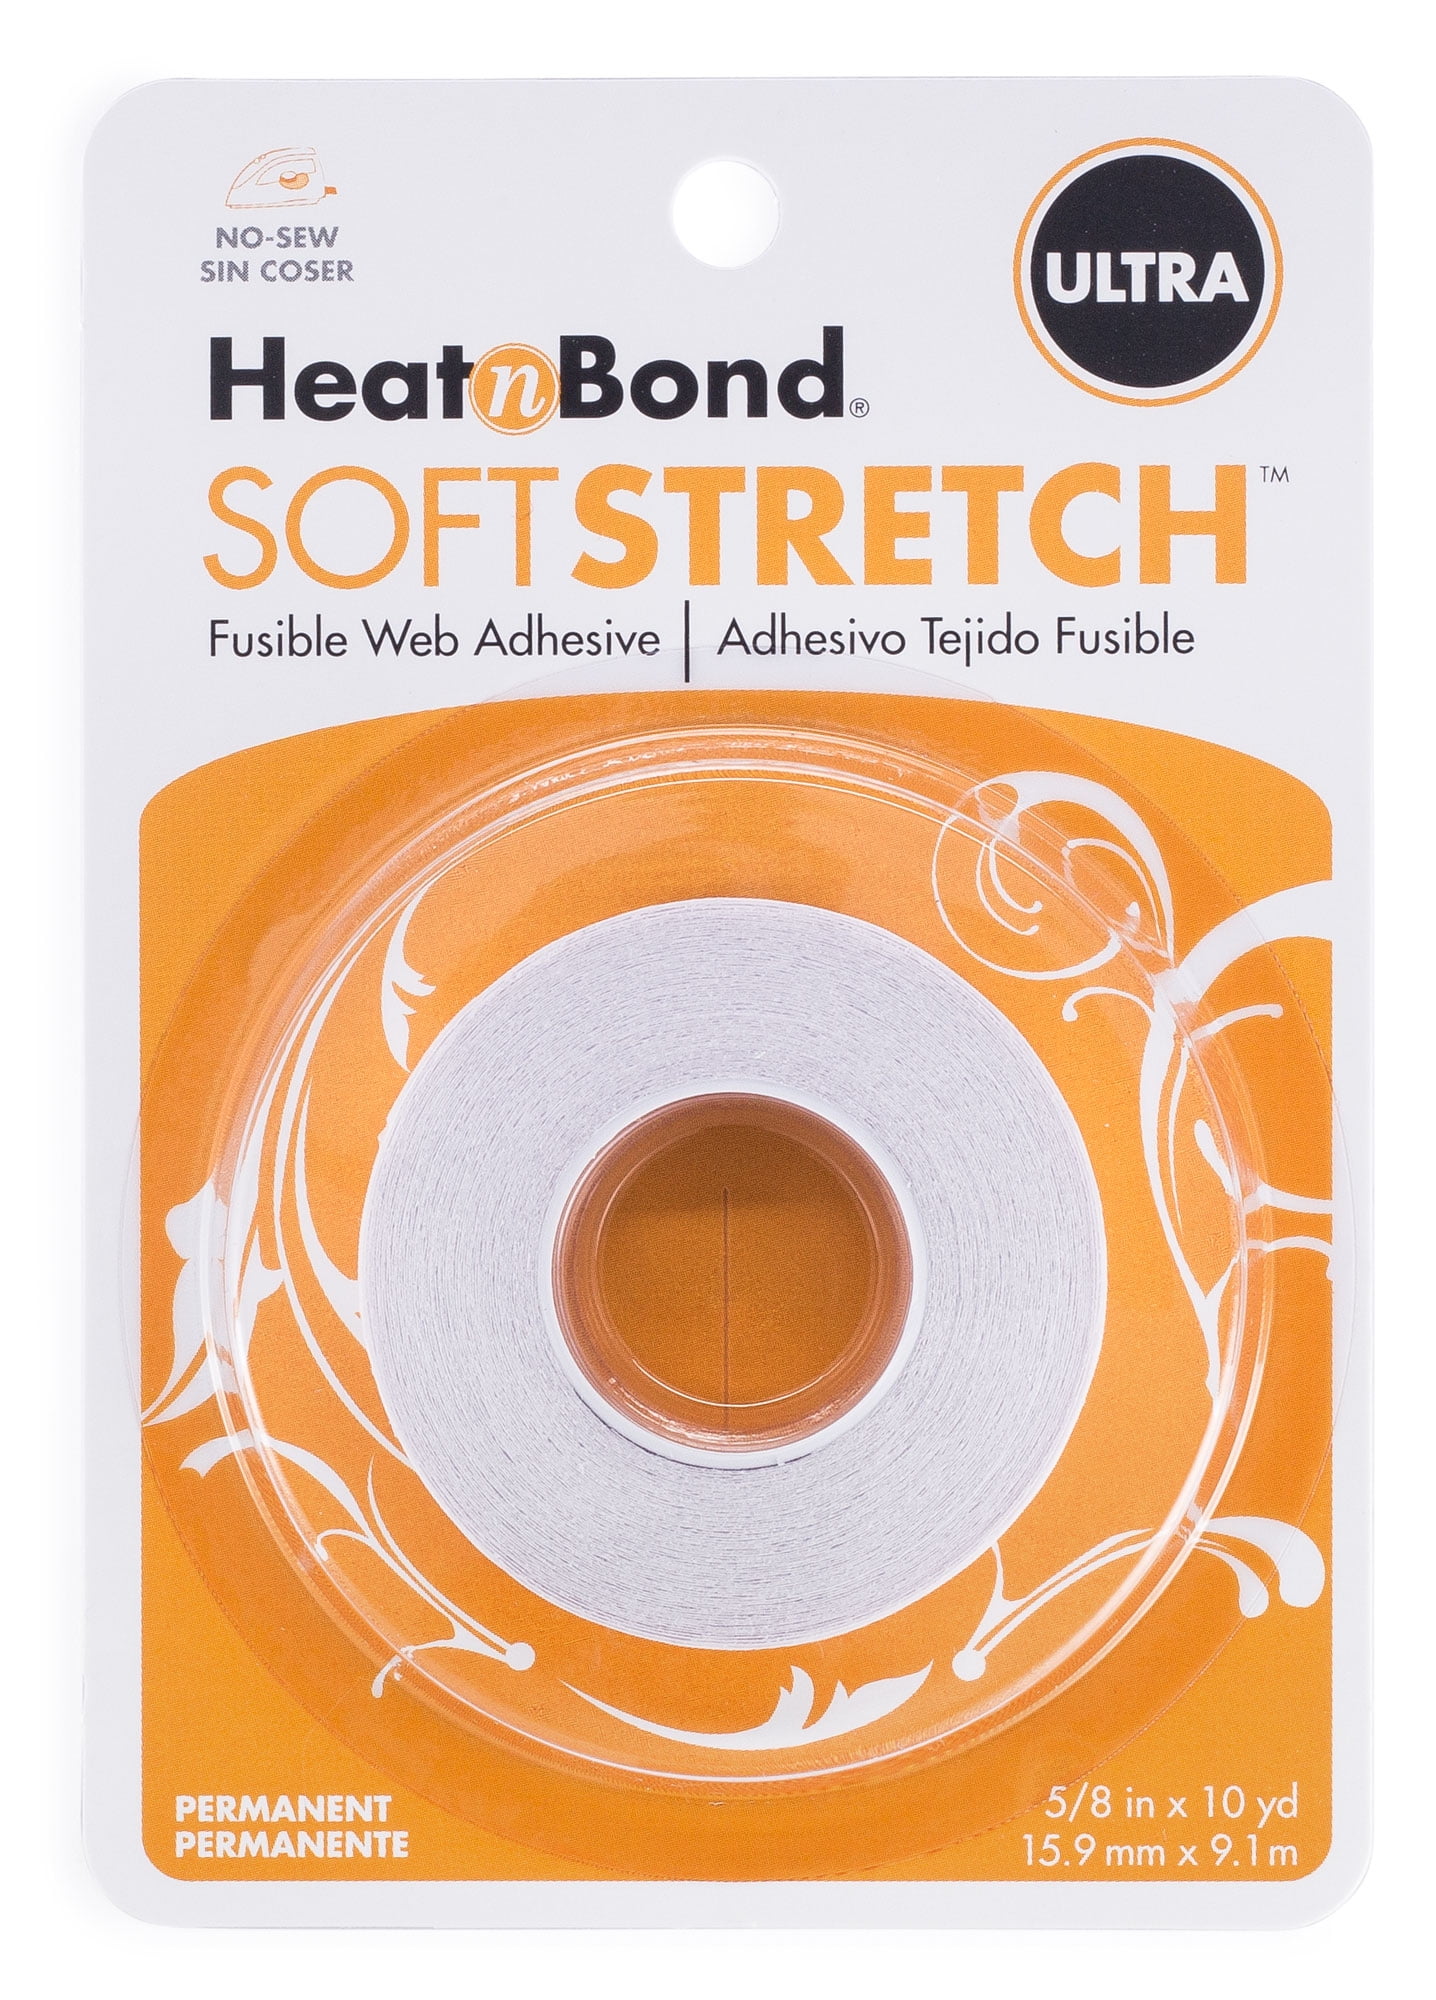 Heat N Bond Ultra Hold*Heat N Bond*Iron-On Adhesive*Fabric Adhesive* Fabric  Iron-On*Permanent Fabric Adhesive*Therm O Web* Fabric Fuse*Ultra